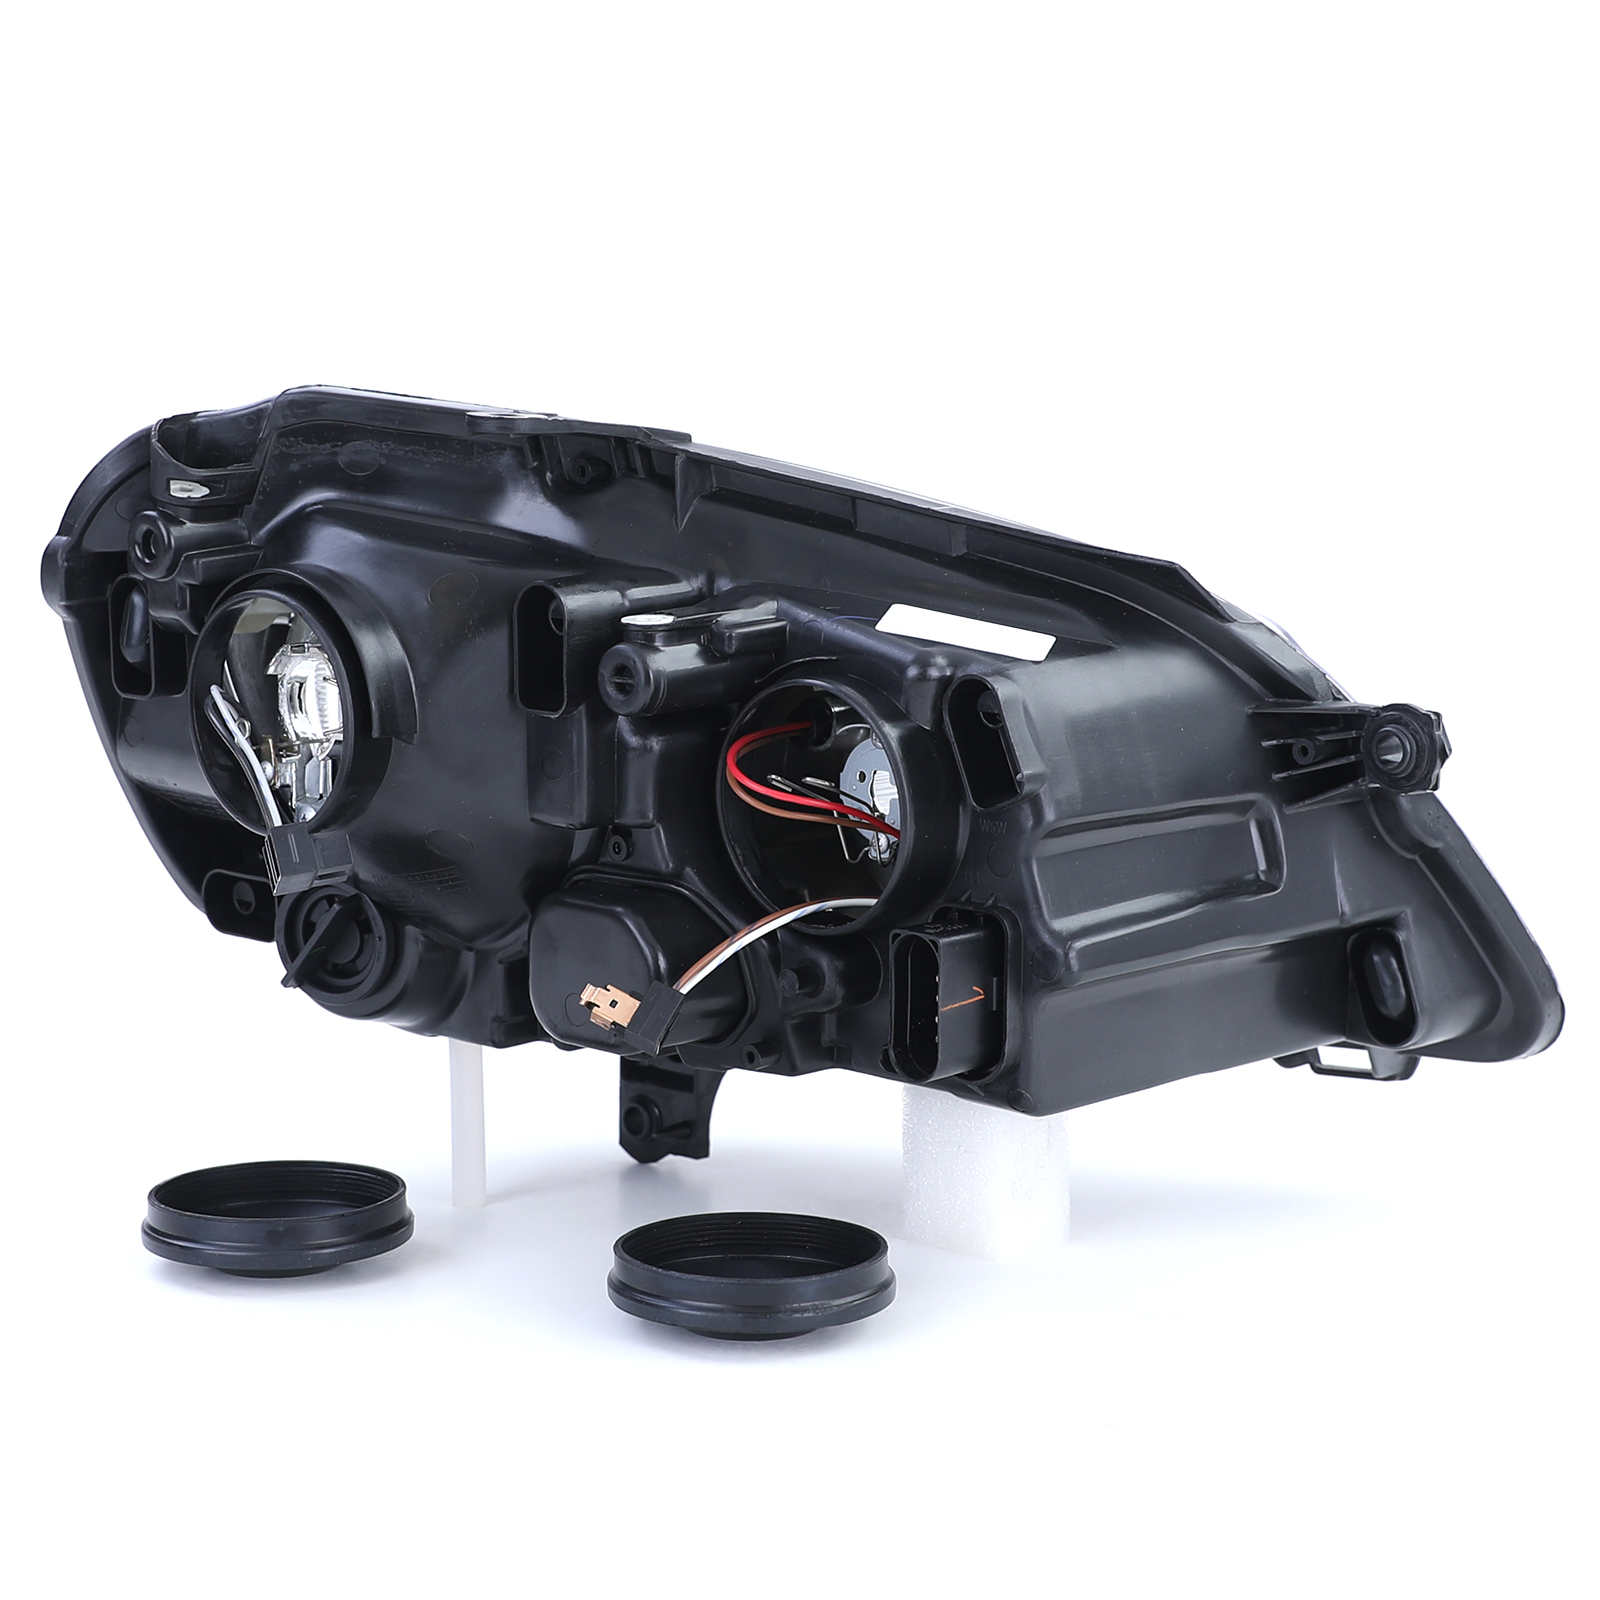 GTI Cup Scheinwerfer schwarz links für VW Polo 9N3 05-09 kaufen